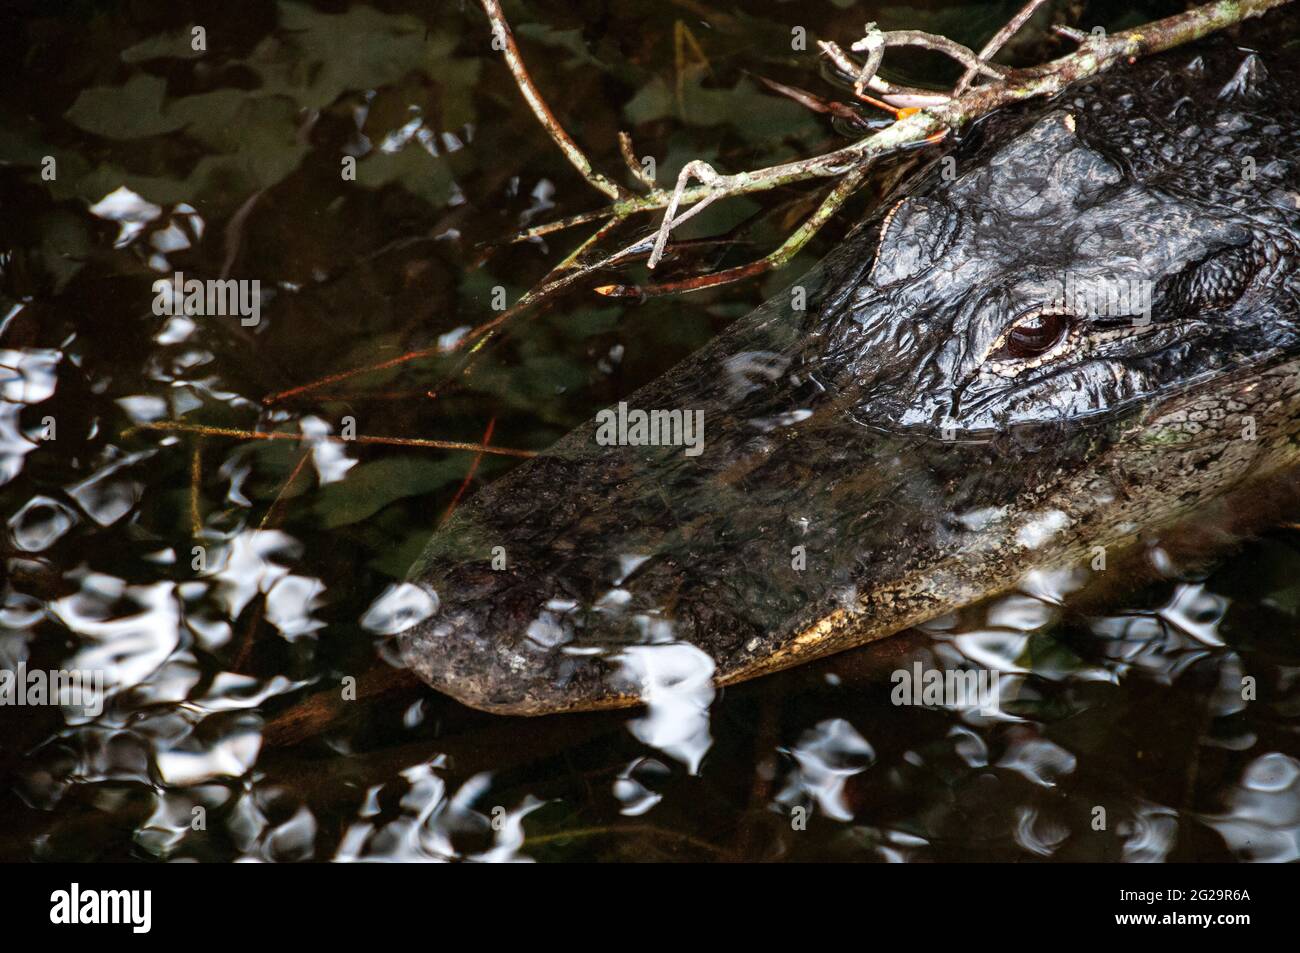 Amerikanischer Alligator (Alligator mississippiensis) lauert unter seichtem Wasser, Shark Valley Visitor Center, Everglades National Park, Florida Stockfoto